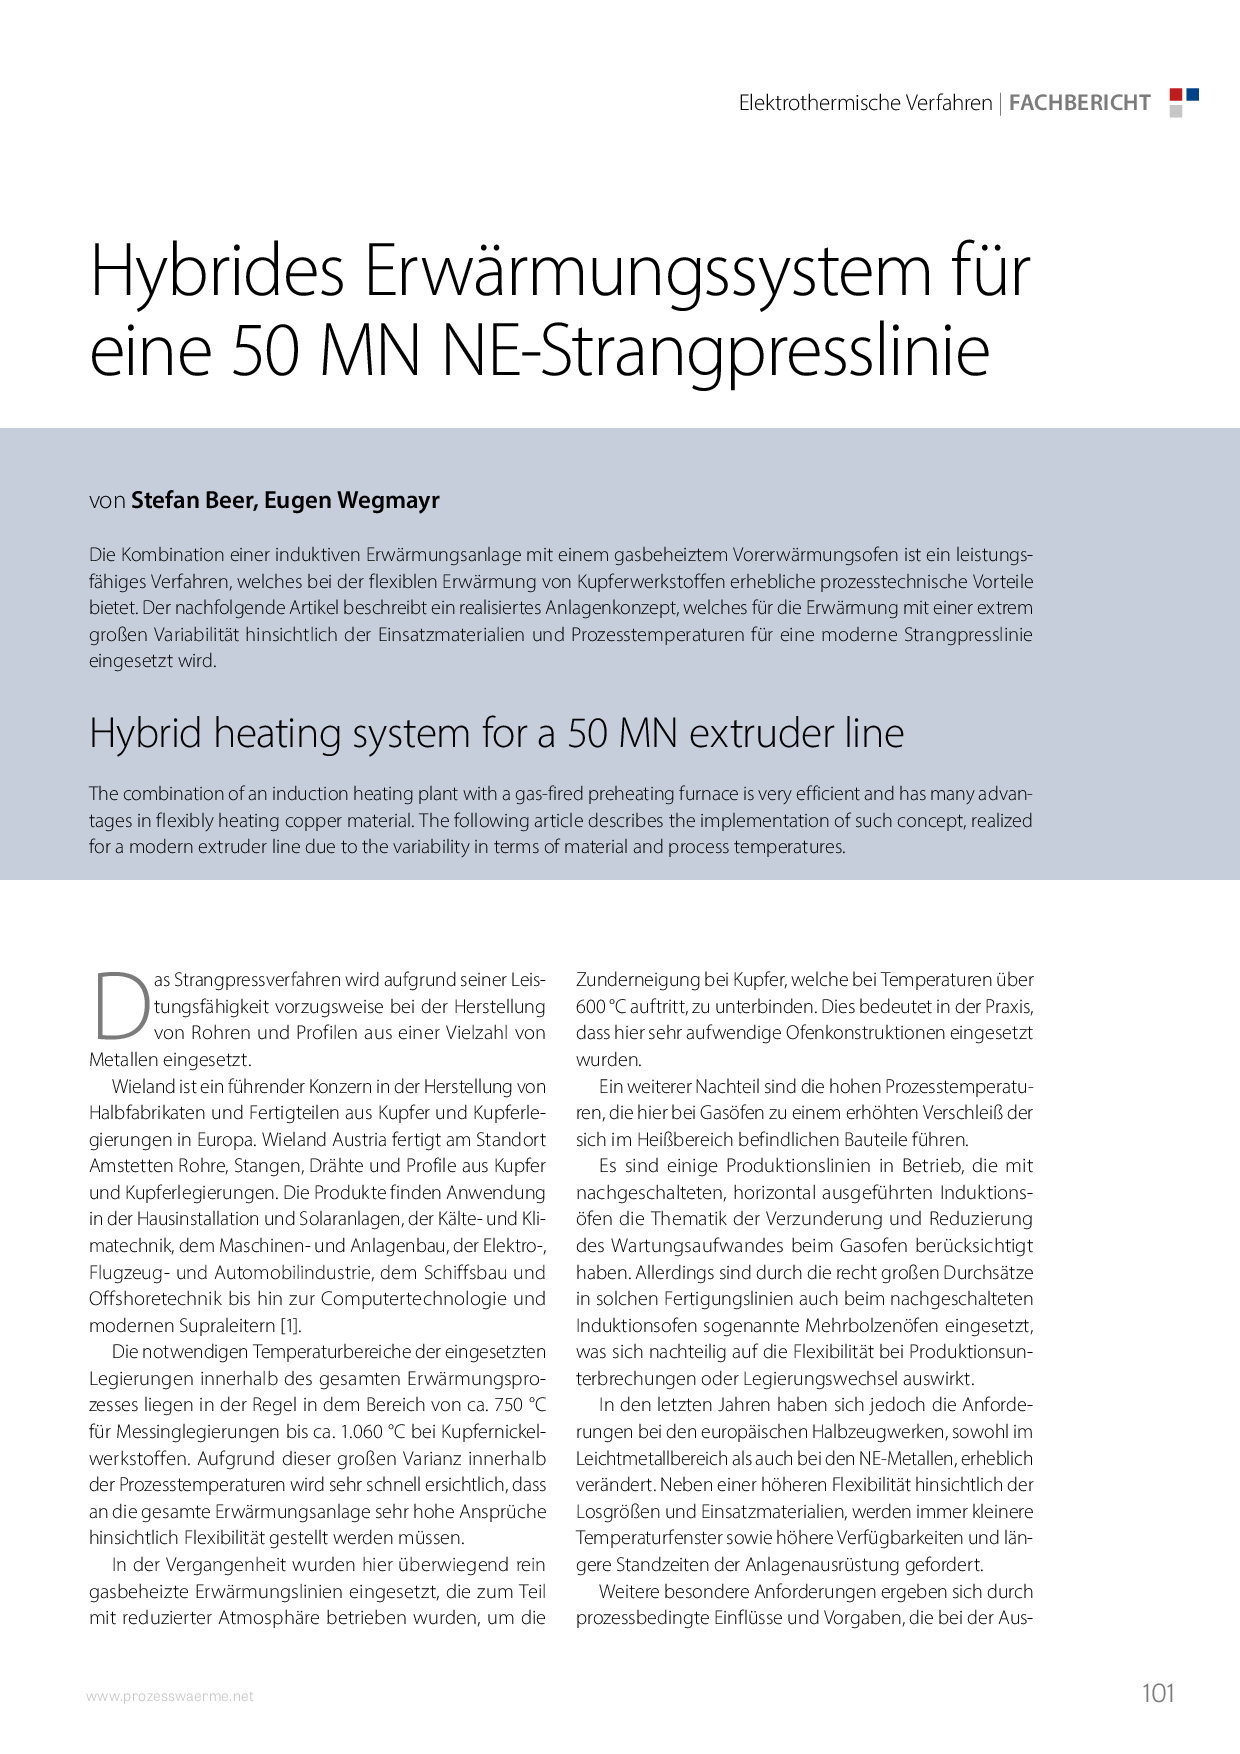 Hybrides Erwärmungssystem für eine 50 MN NE-Strangpresslinie